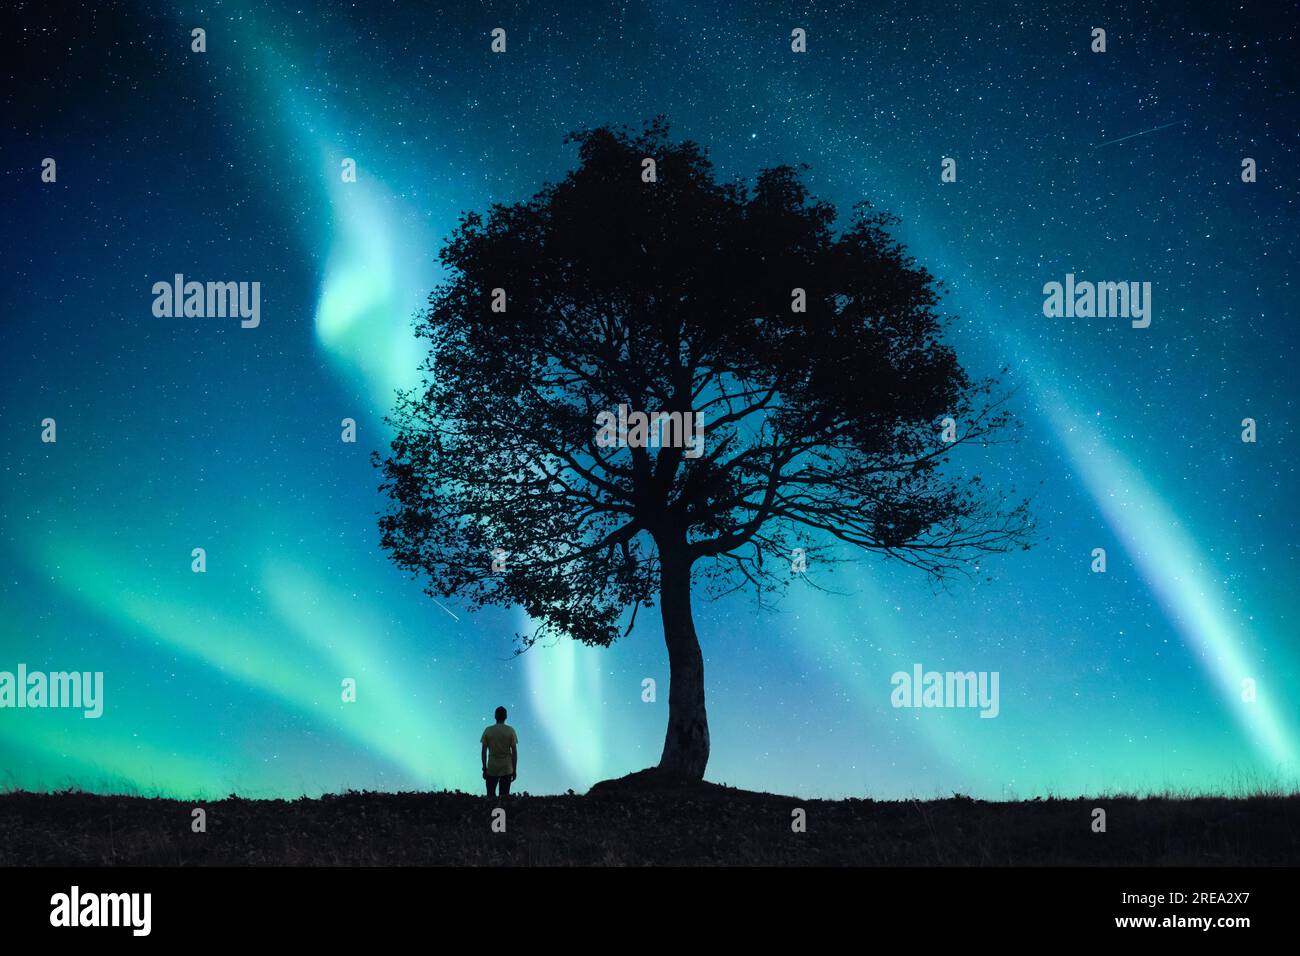 Umano solitario sotto un vecchio albero nel campo notturno sullo sfondo di un cielo incredibile con la luce dell'aurora boreale. Fotografia di paesaggi Foto Stock